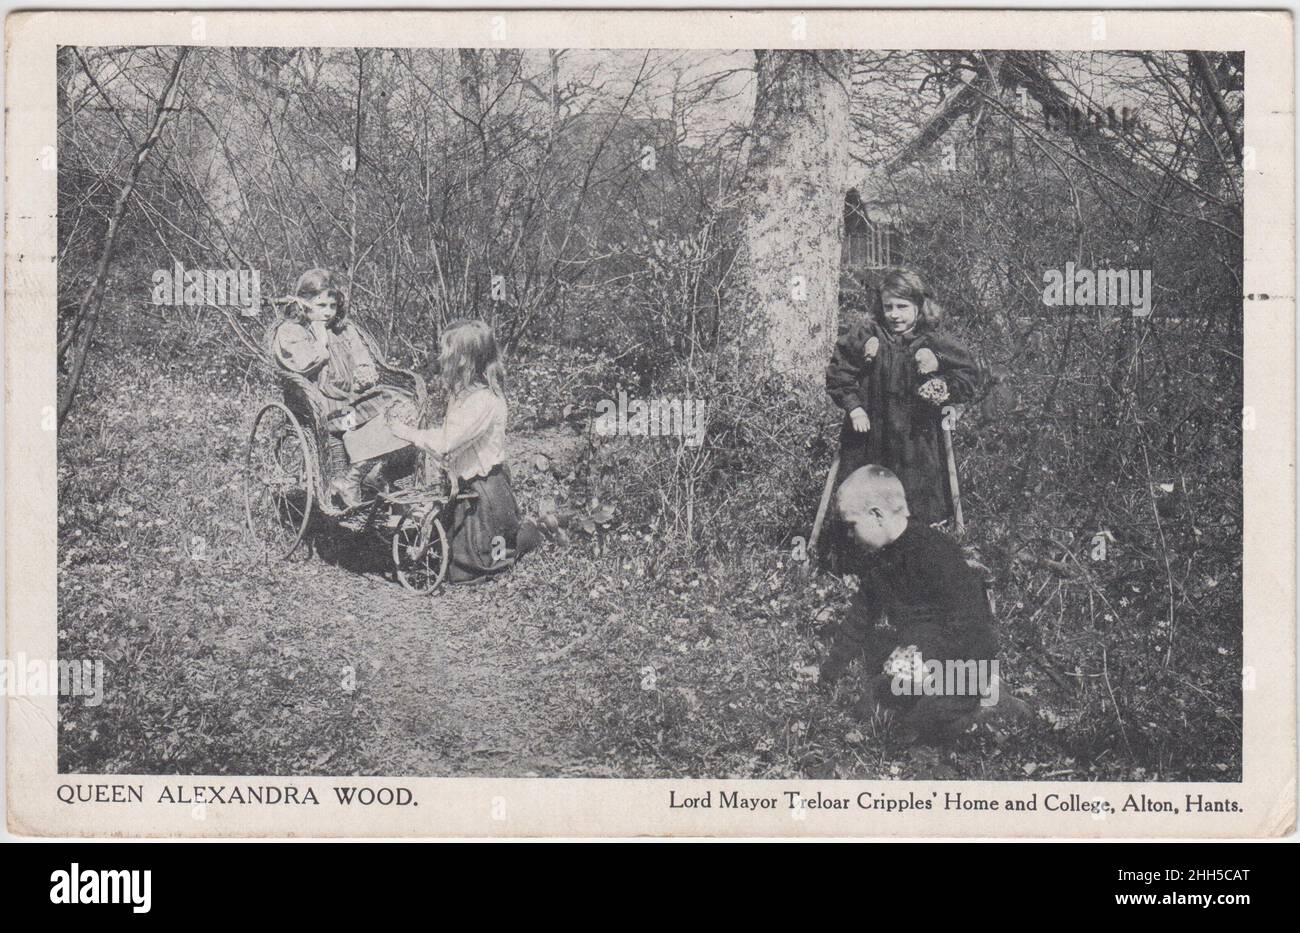 'Queen Alexandra Wood: Lord Mayor Treloar Crippless' Home and College, Alton', Hampshire: Quatre enfants dans les bois, une fille est sur des béquilles, une autre est dans un fauteuil roulant à trois roues.Cette carte postale a été envoyée en 1911 Banque D'Images